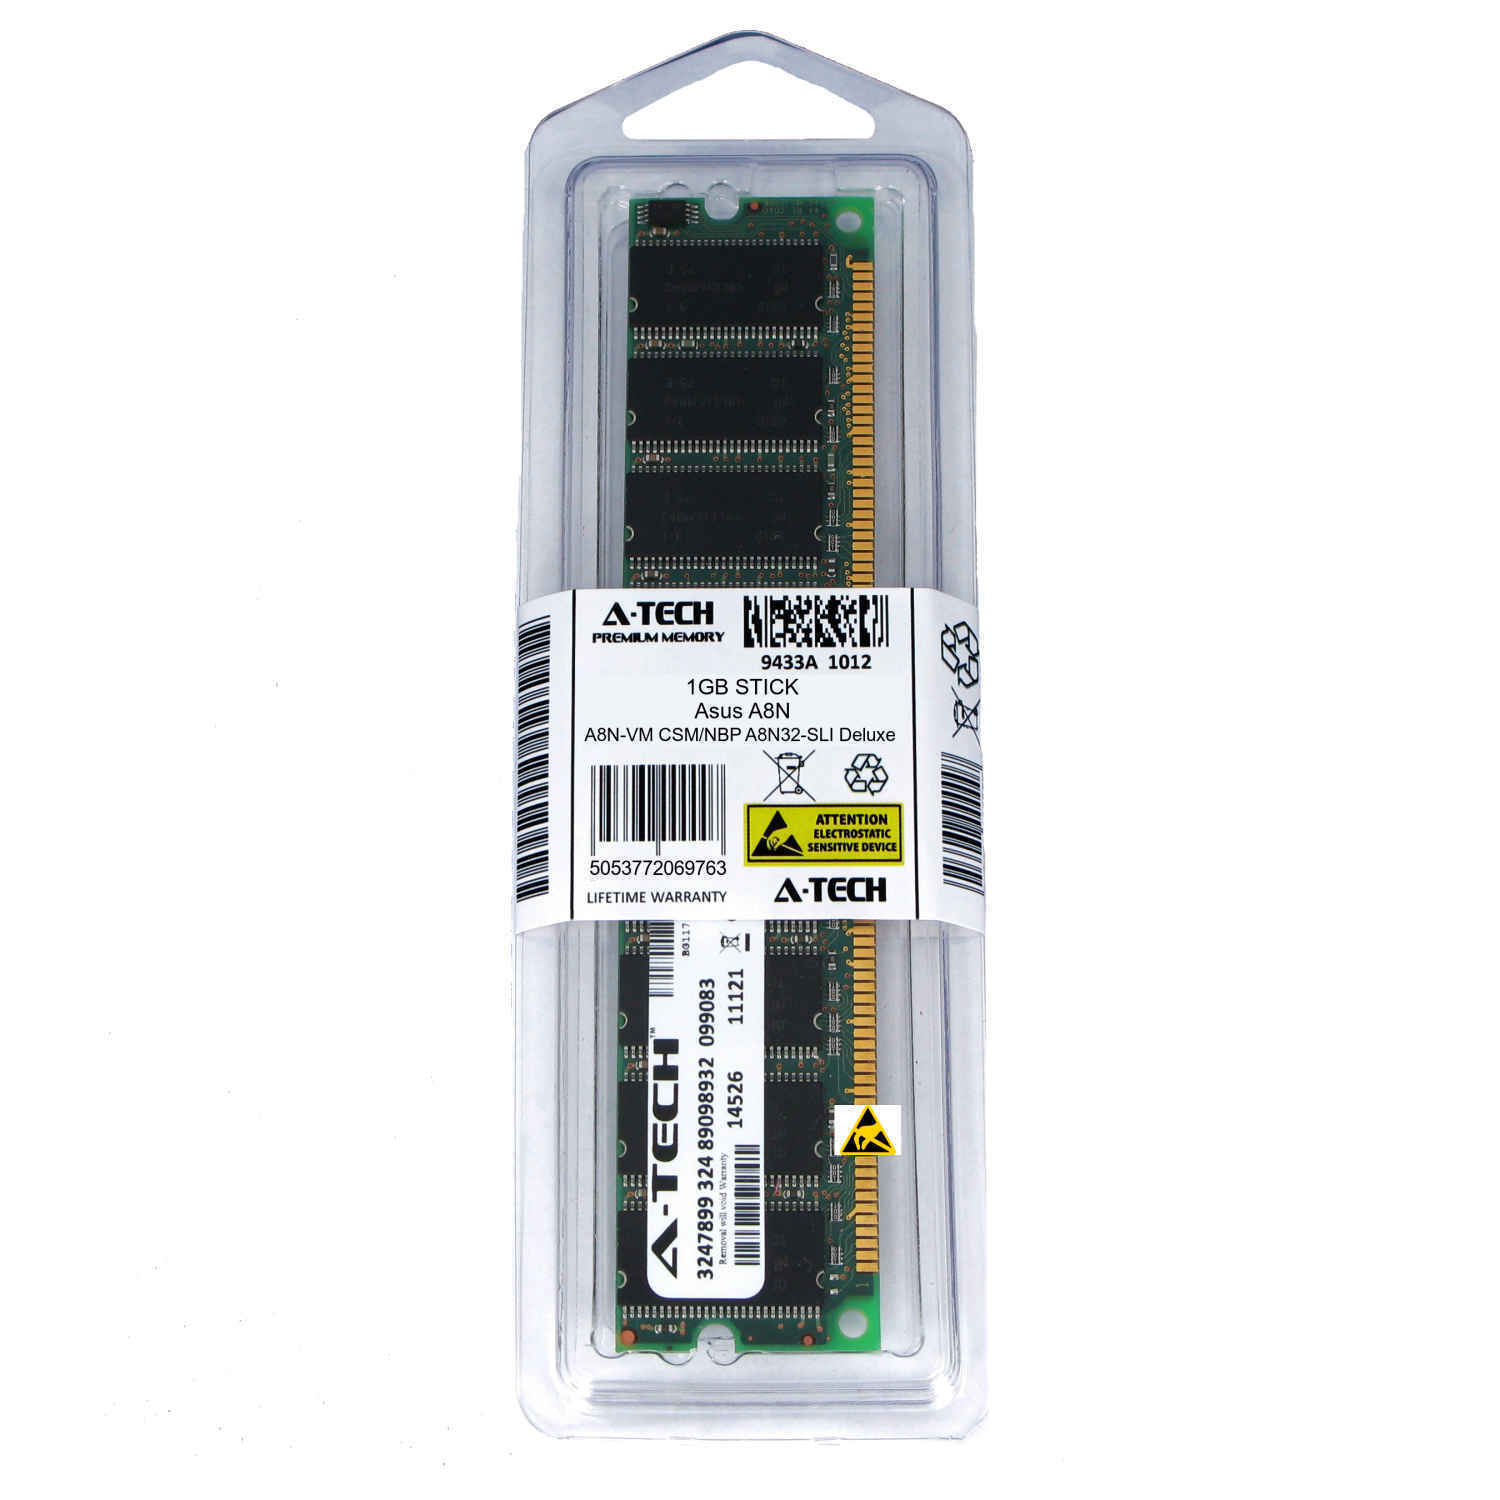 1GB DIMM Asus A8N-VM CSM/NBP Deluxe A8N32-SLI A8N-SLI Premium Ram Memory